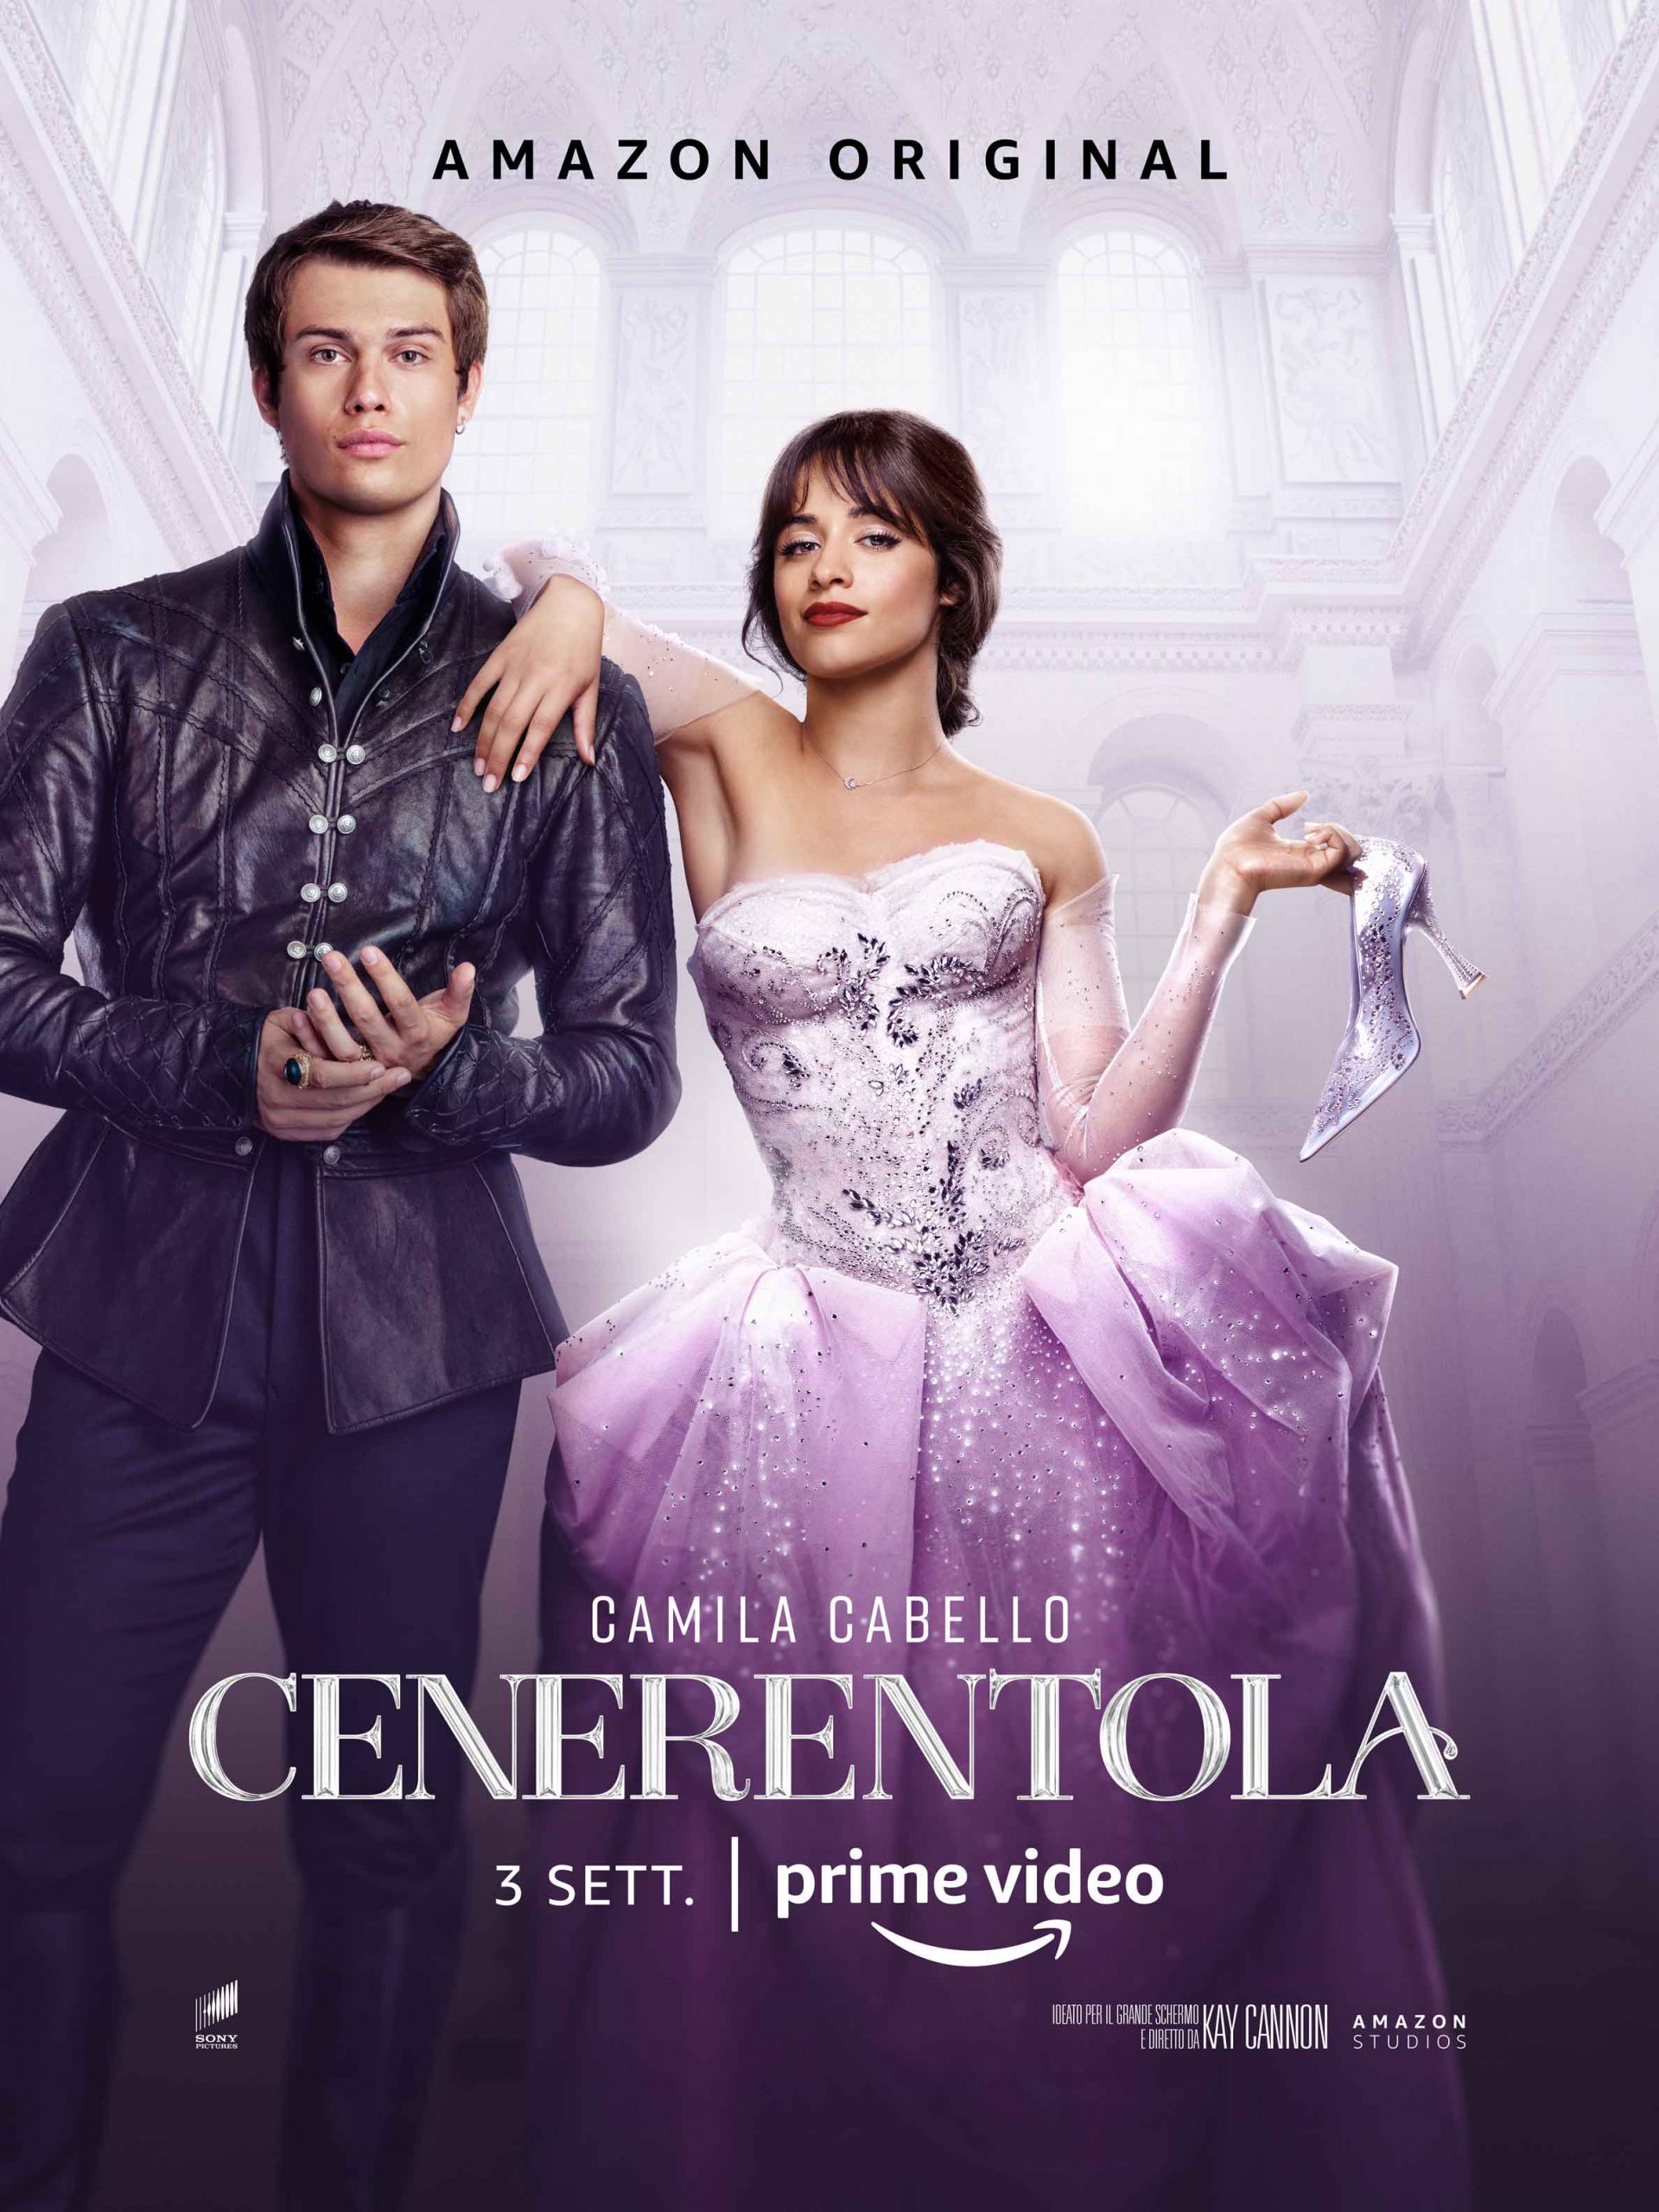 Cinderella sẽ được phát độc quyền trên nền tảng Amazon Prime